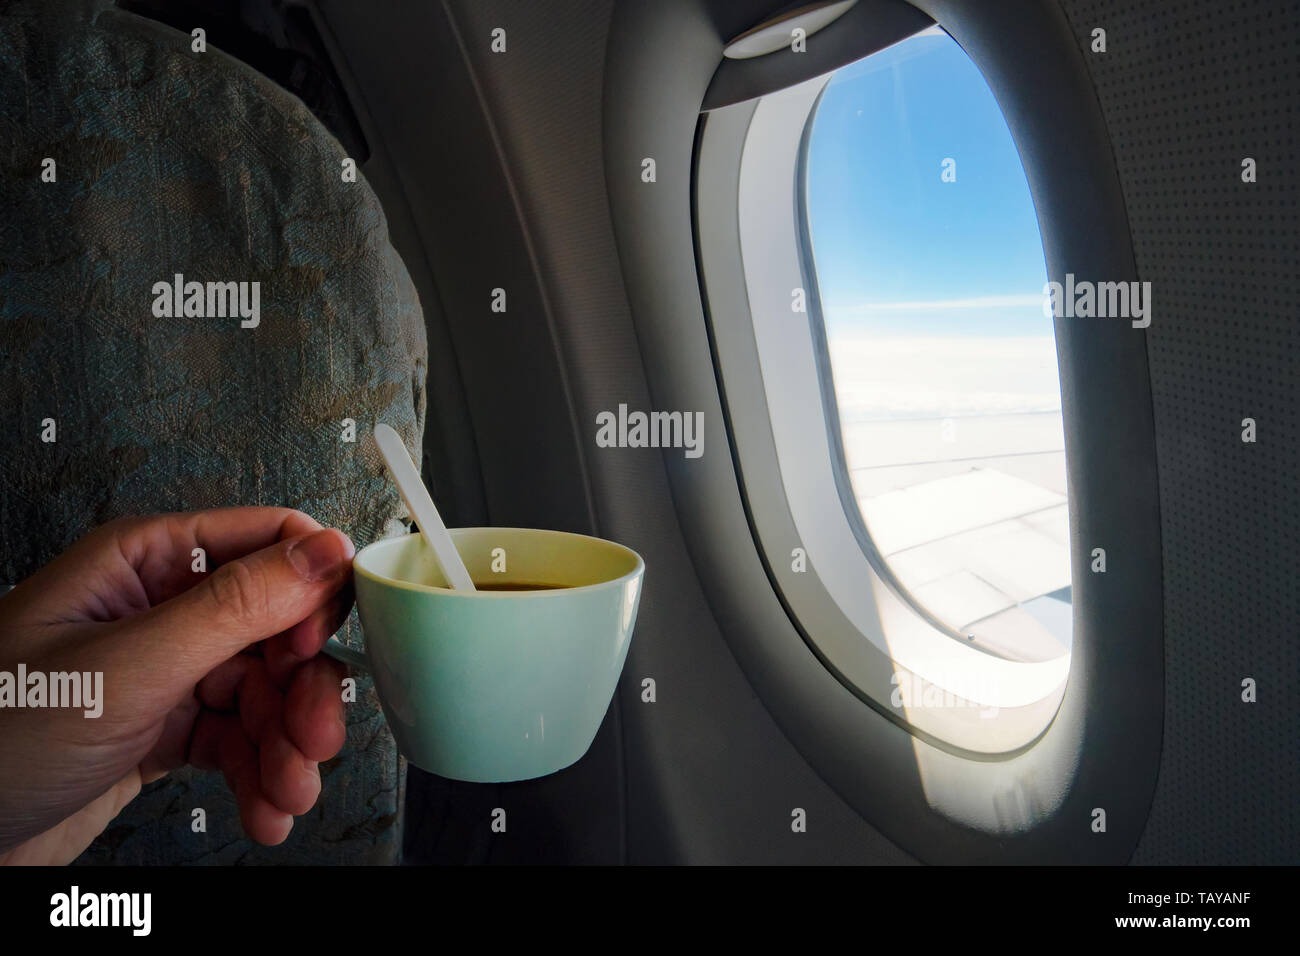 Bandeja de asiento de avión fotografías e imágenes de alta resolución -  Página 3 - Alamy